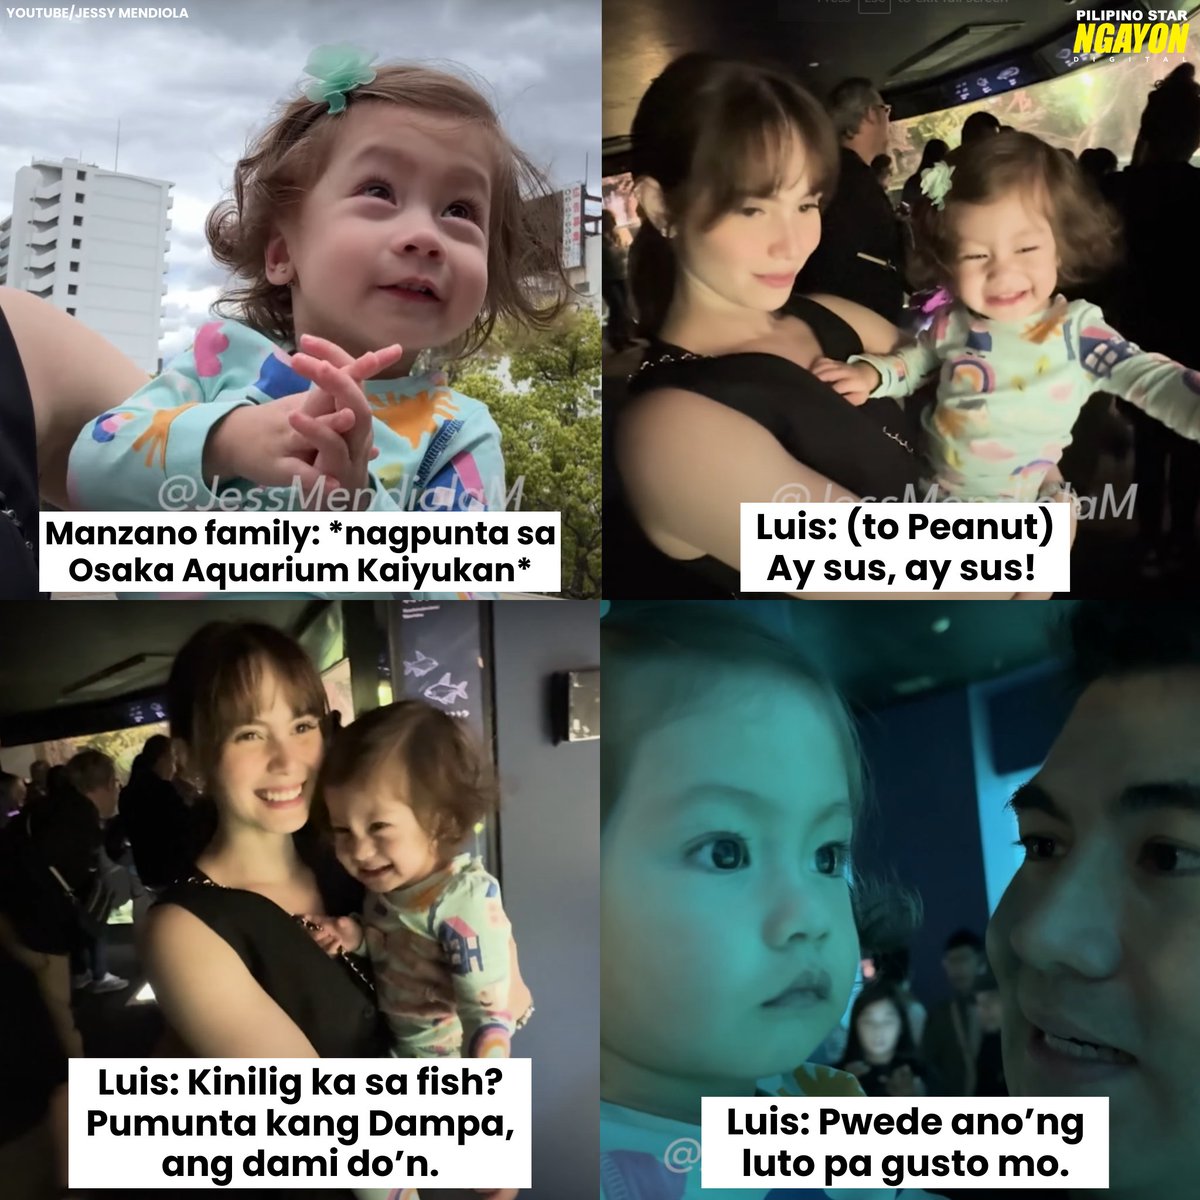 Luis: 'Kinilig ka sa fish? Pumunta kang Dampa, ang dami do’n.' 🤣 (YouTube/Jessy Mendiola)